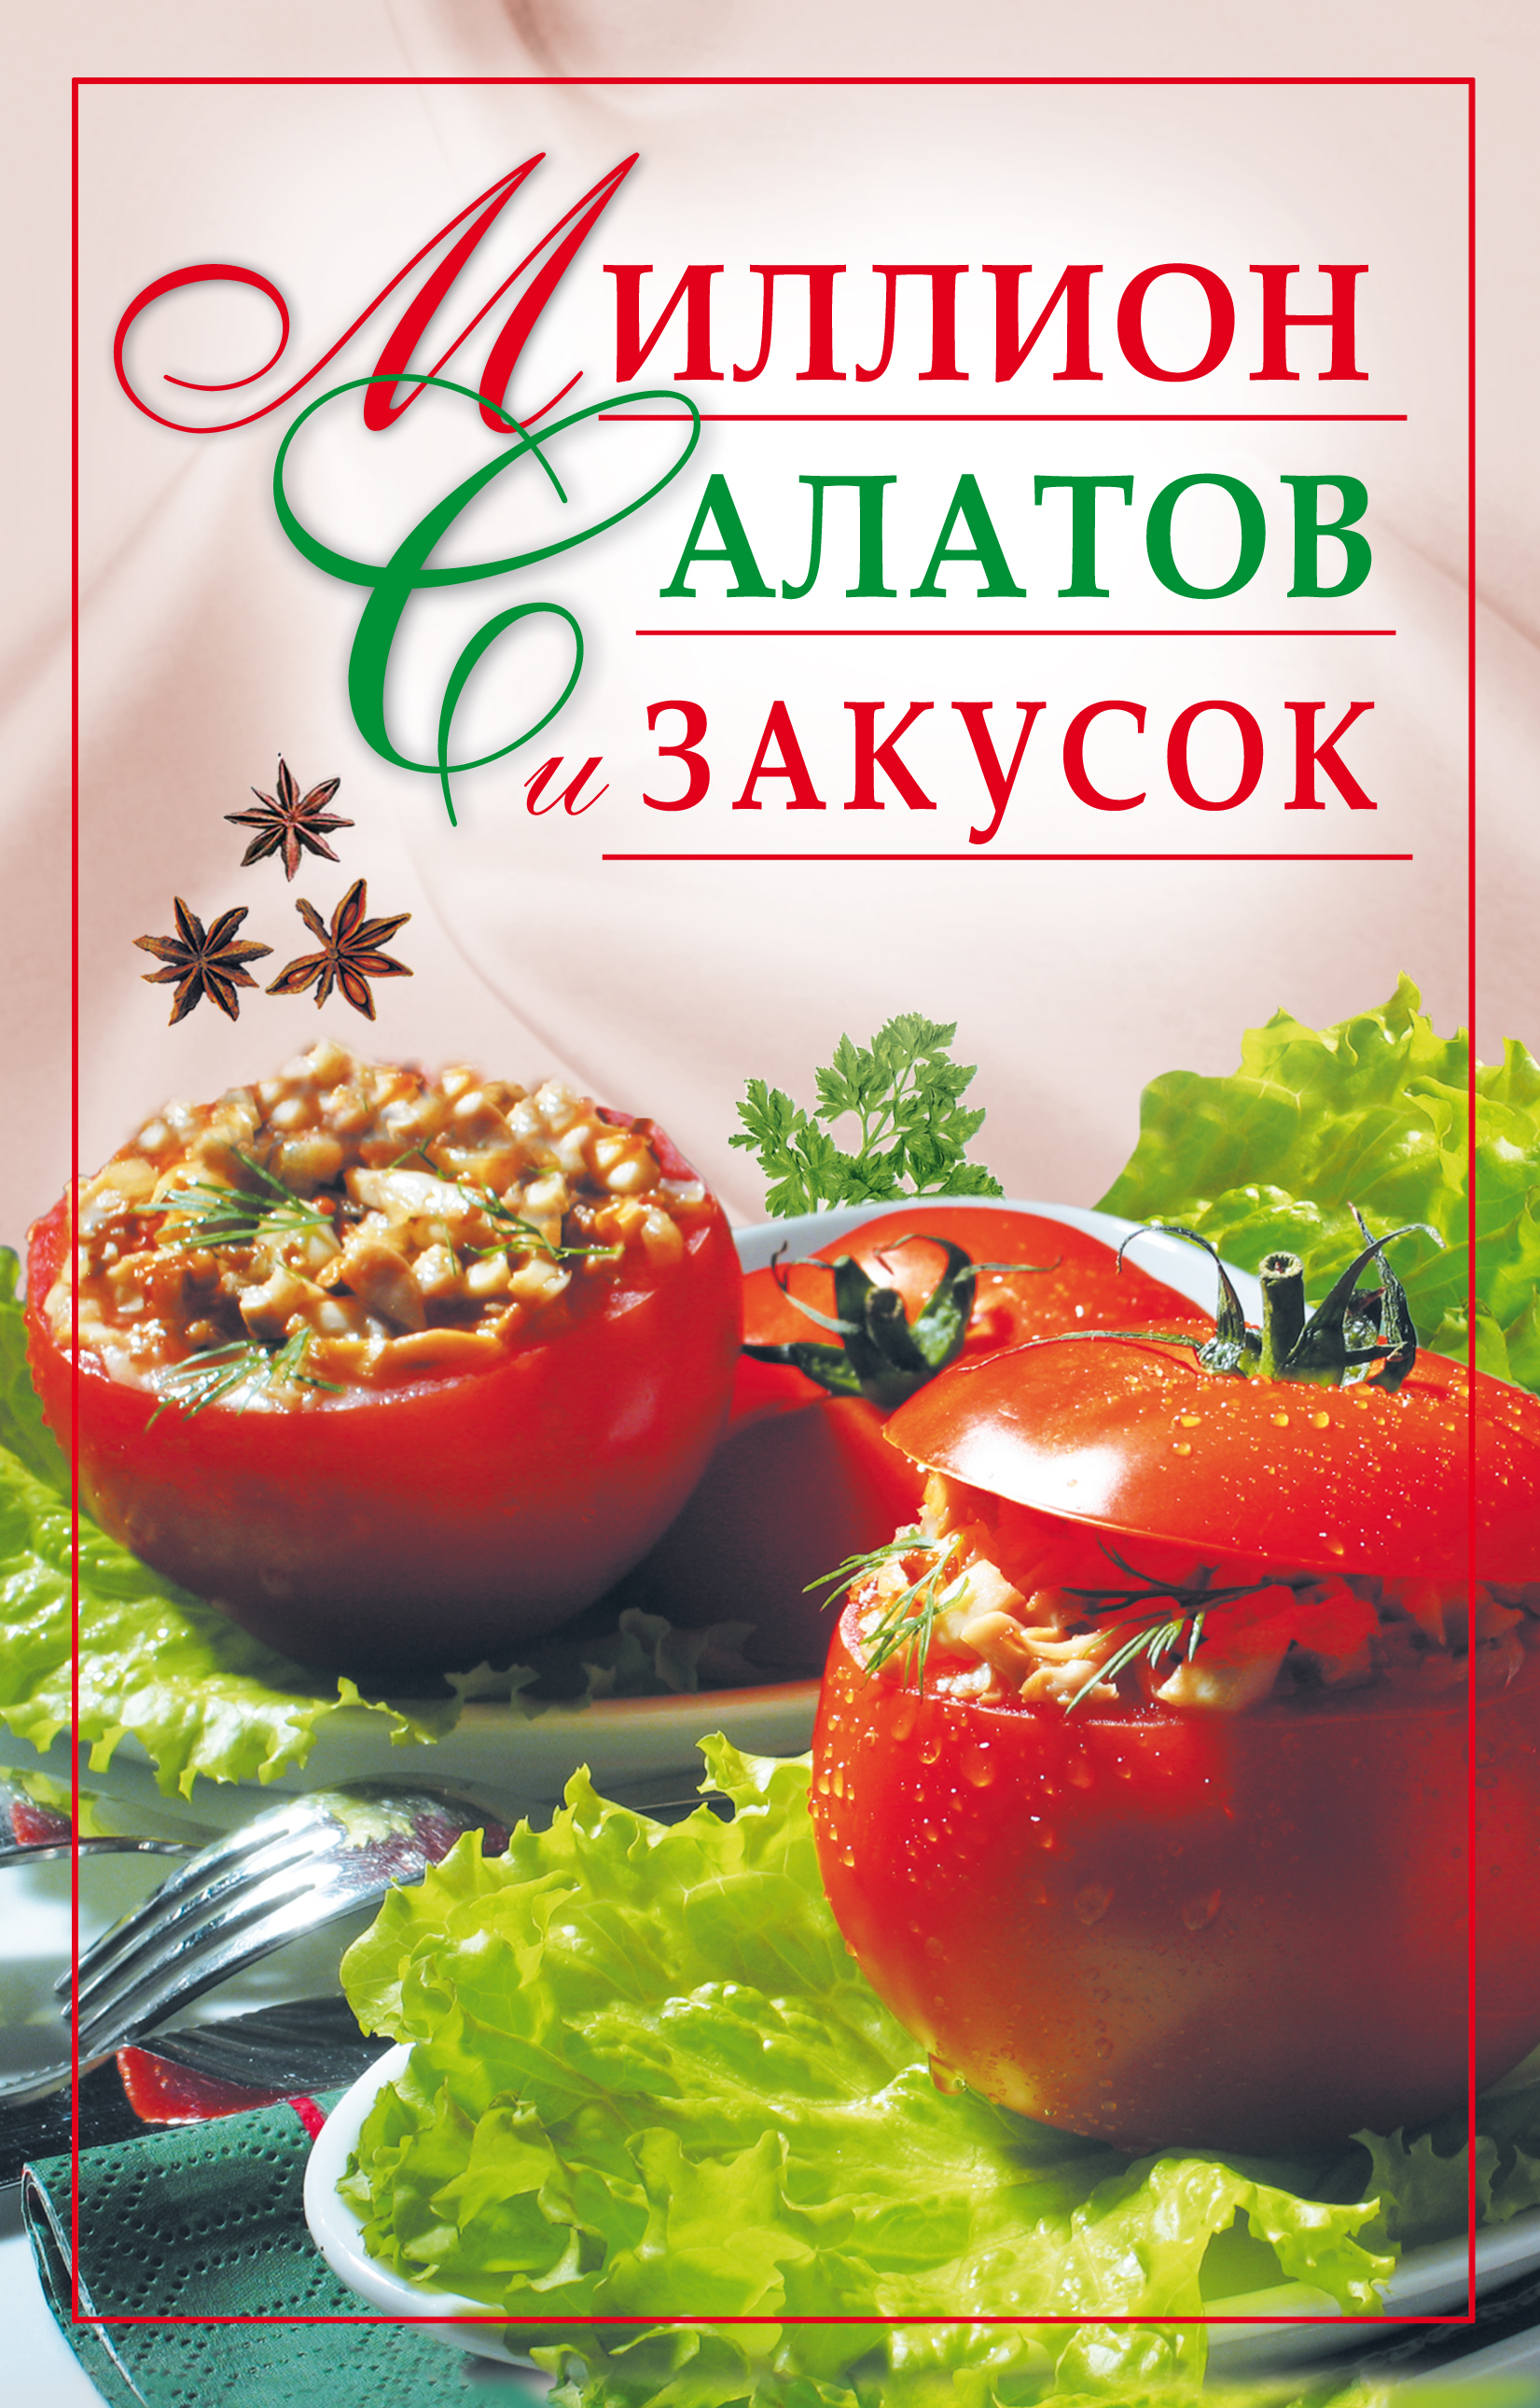 Книга Миллион салатов и закусок из серии , созданная Ю. Николаева, может относится к жанру Кулинария. Стоимость электронной книги Миллион салатов и закусок с идентификатором 302432 составляет 45.00 руб.